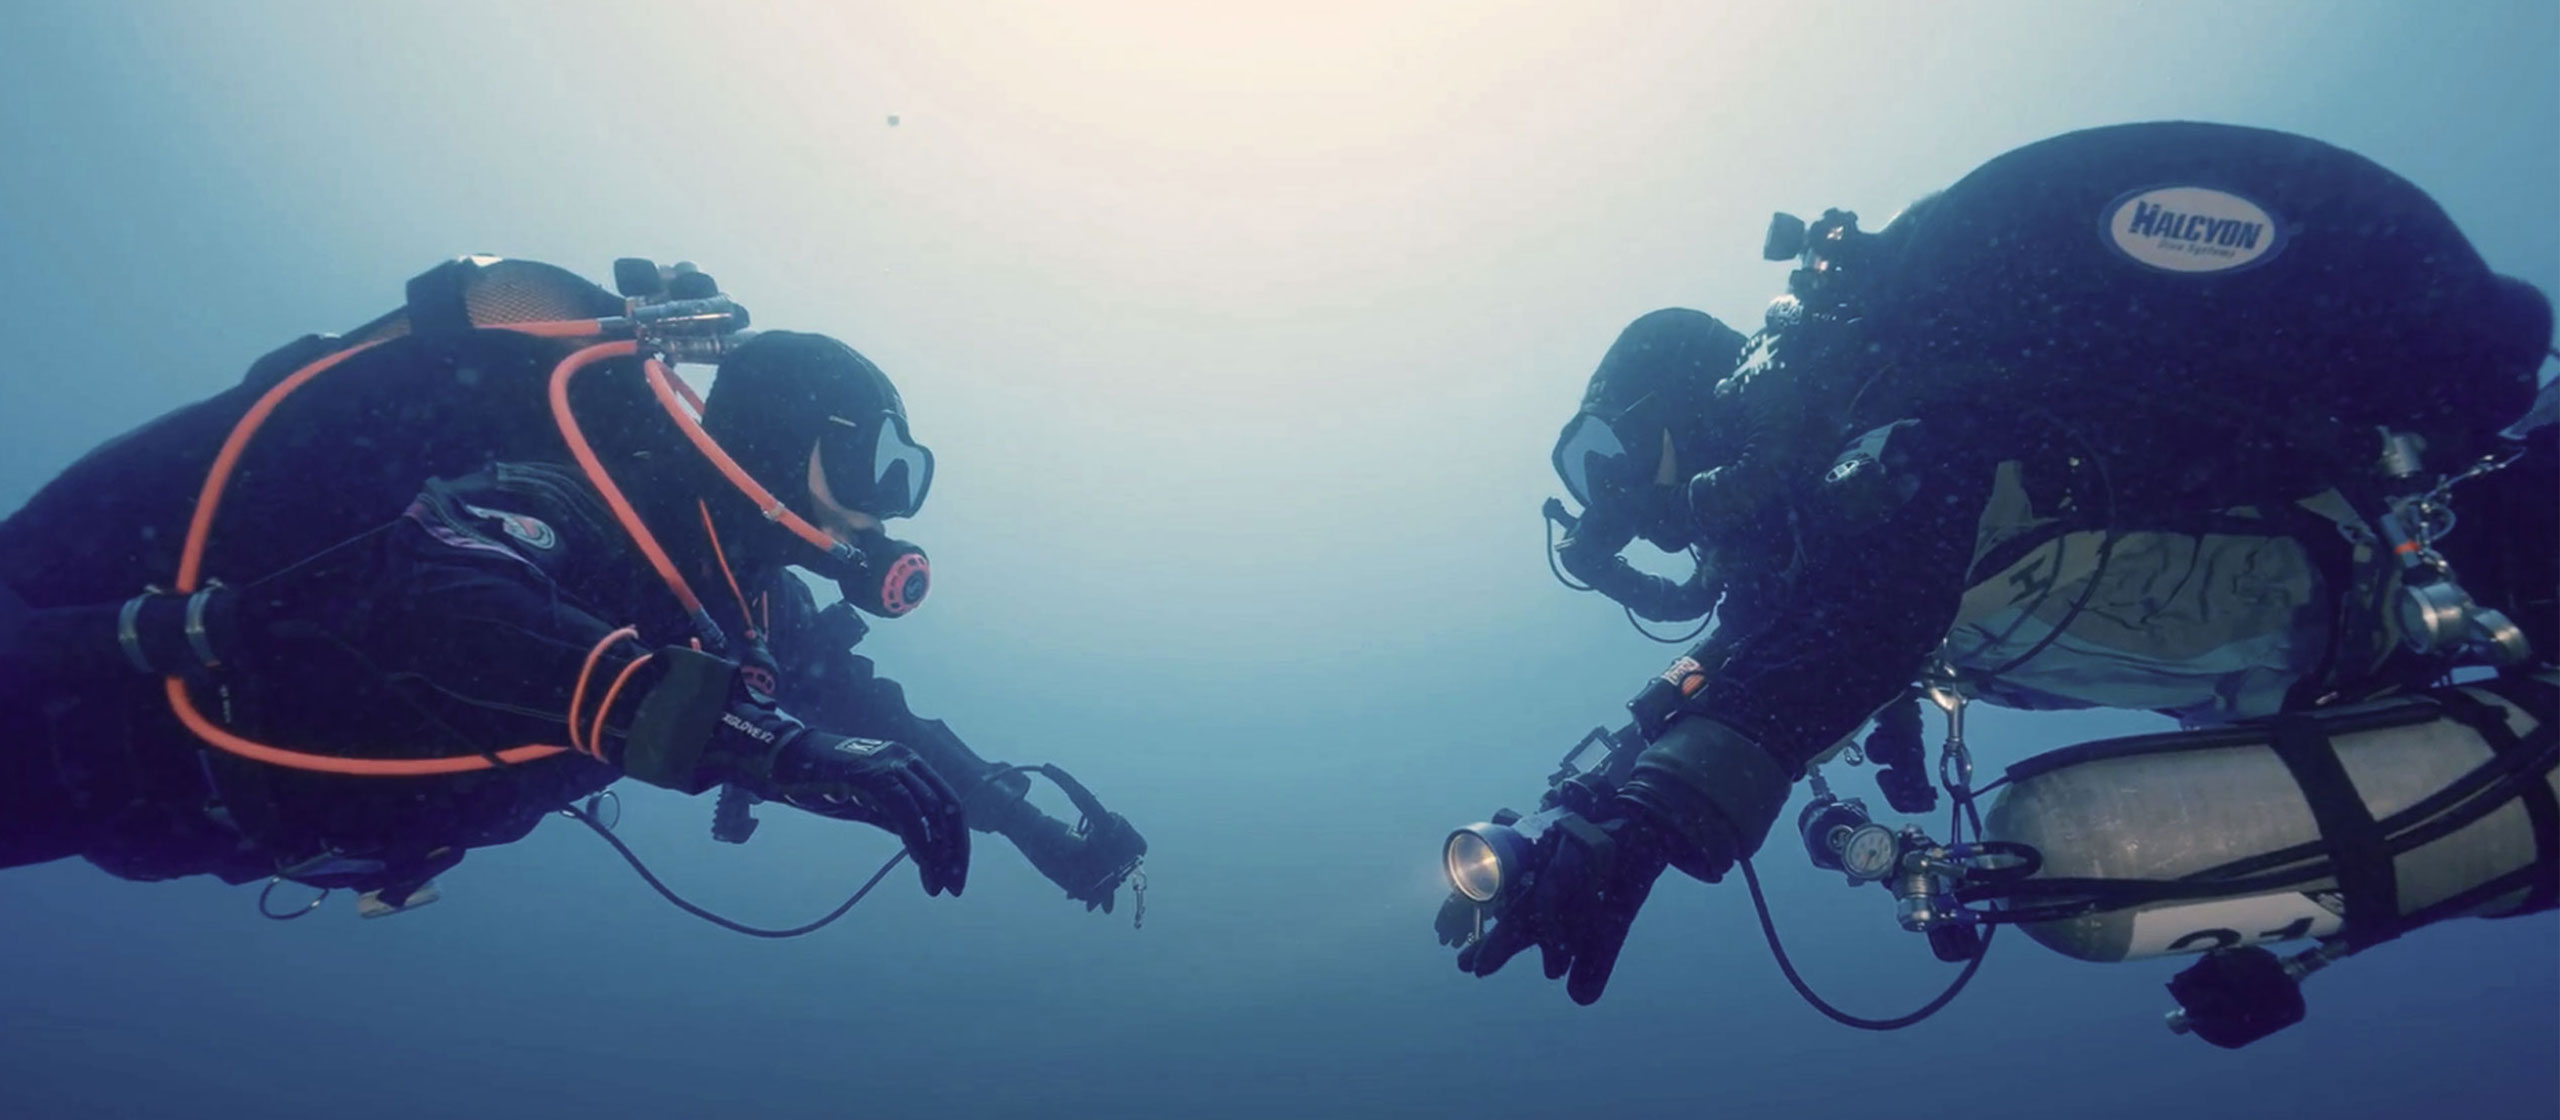 Vše, co jste vždy chtěli vědět o potápění v týmu s potápěčem používajícím rebreather